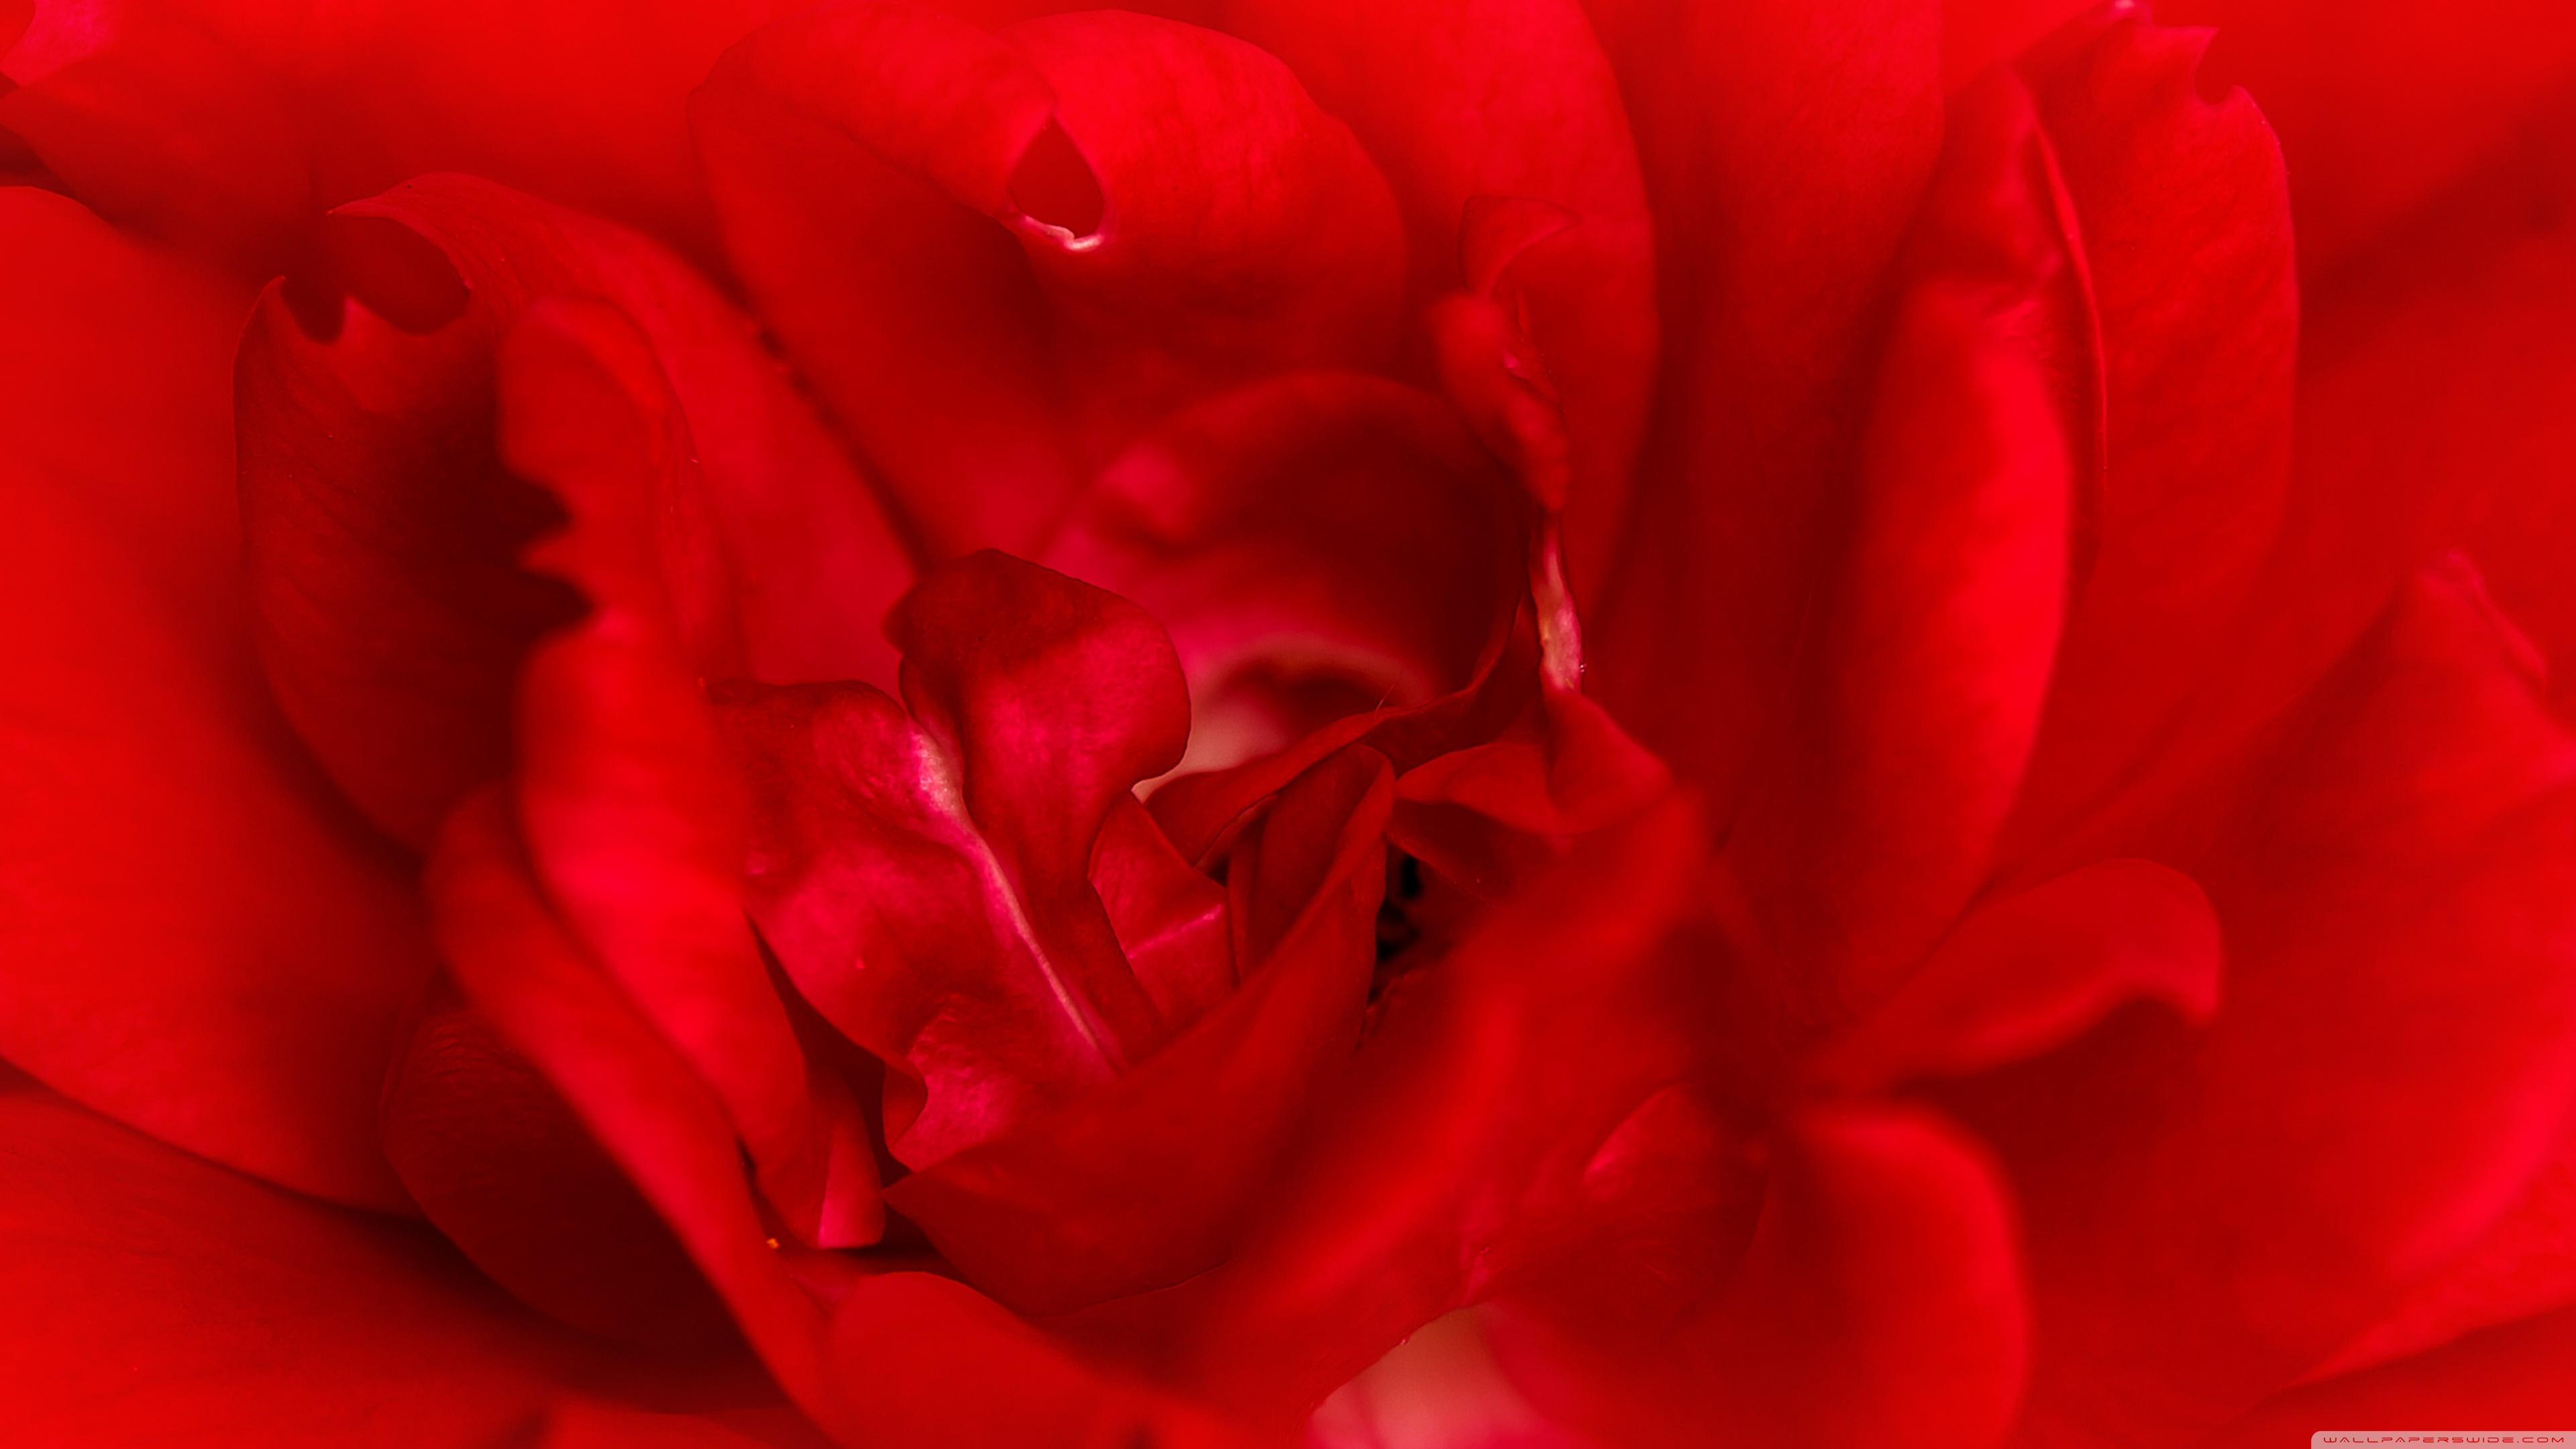 Red Rose Macro ❤ 4K HD Desktop Wallpaper for 4K Ultra HD TV